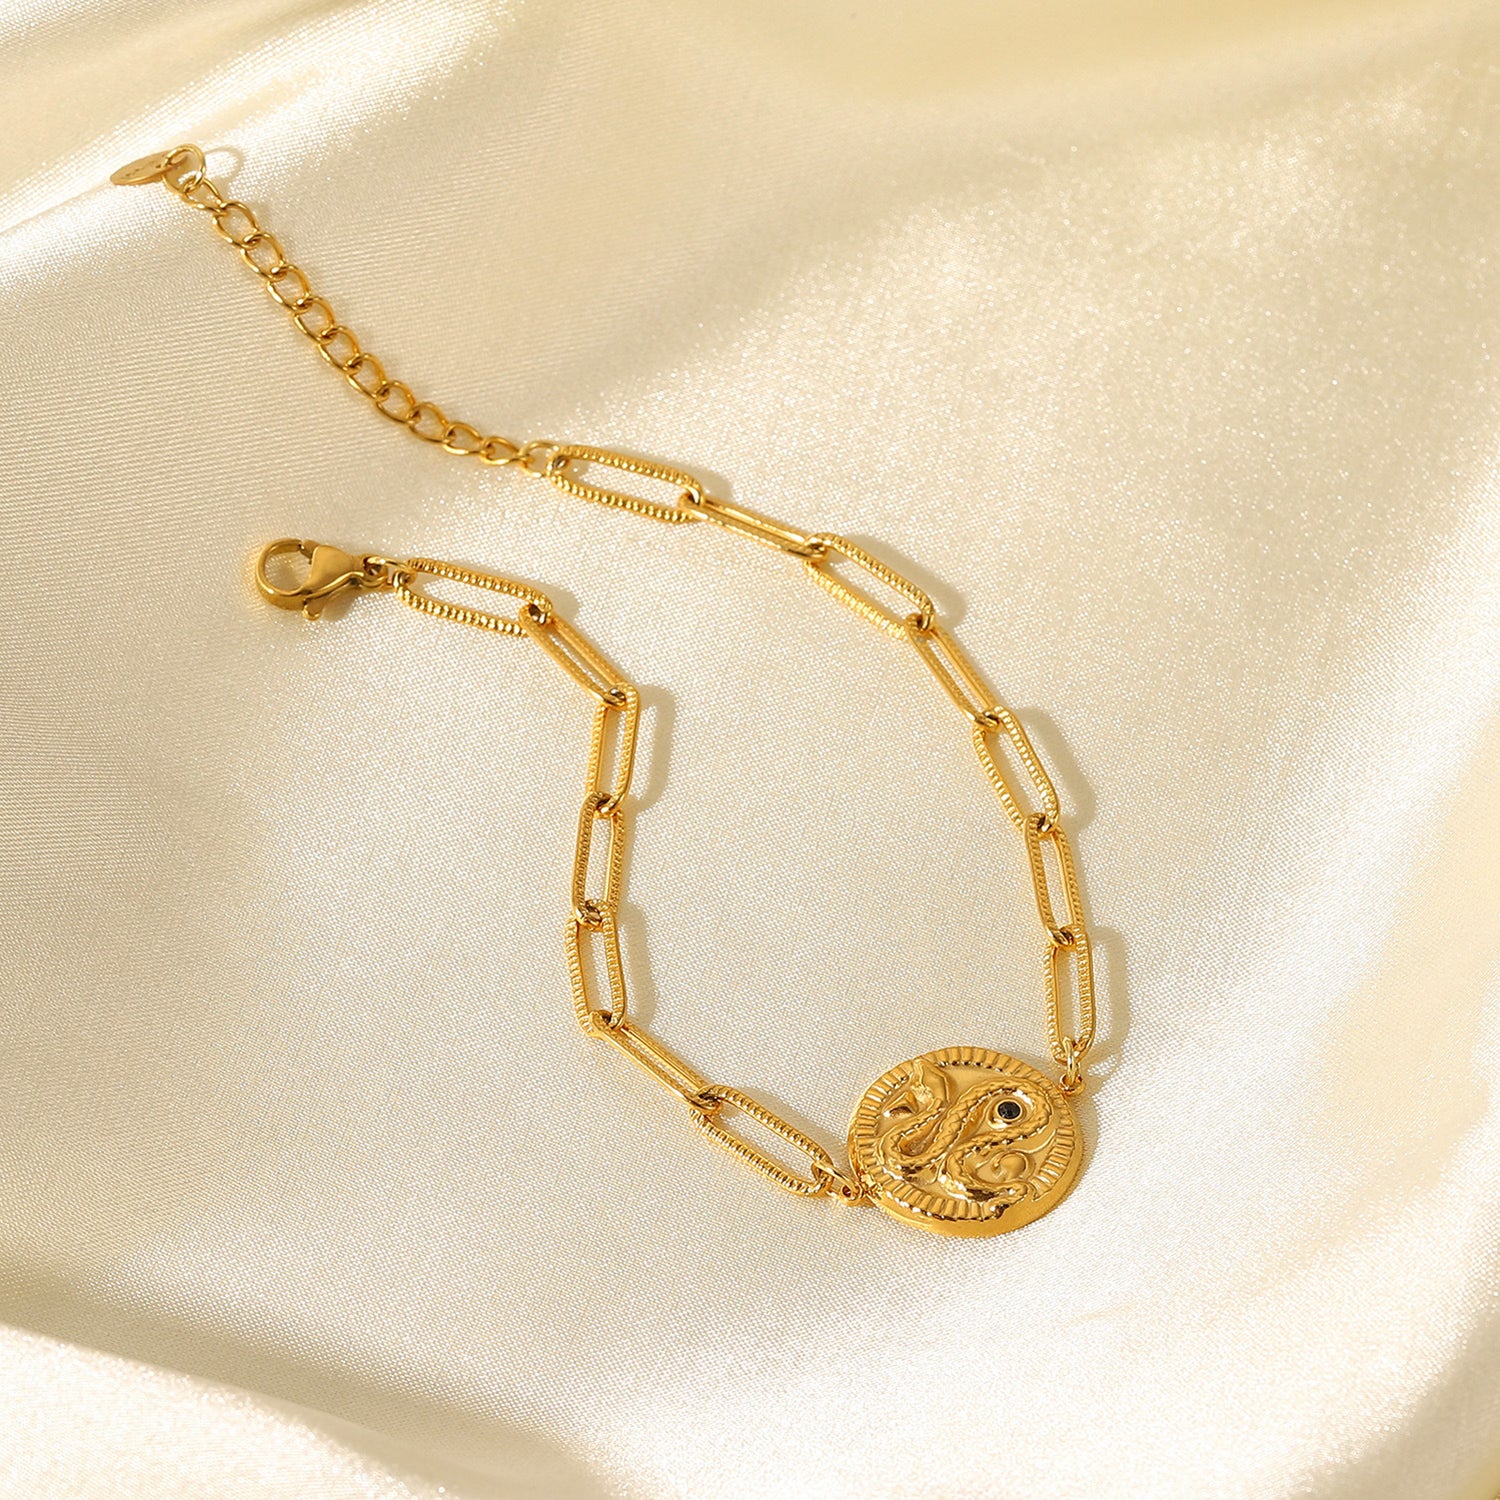 Stainless Steel Bracelet Snake Embossed Bracelet medyjewelry